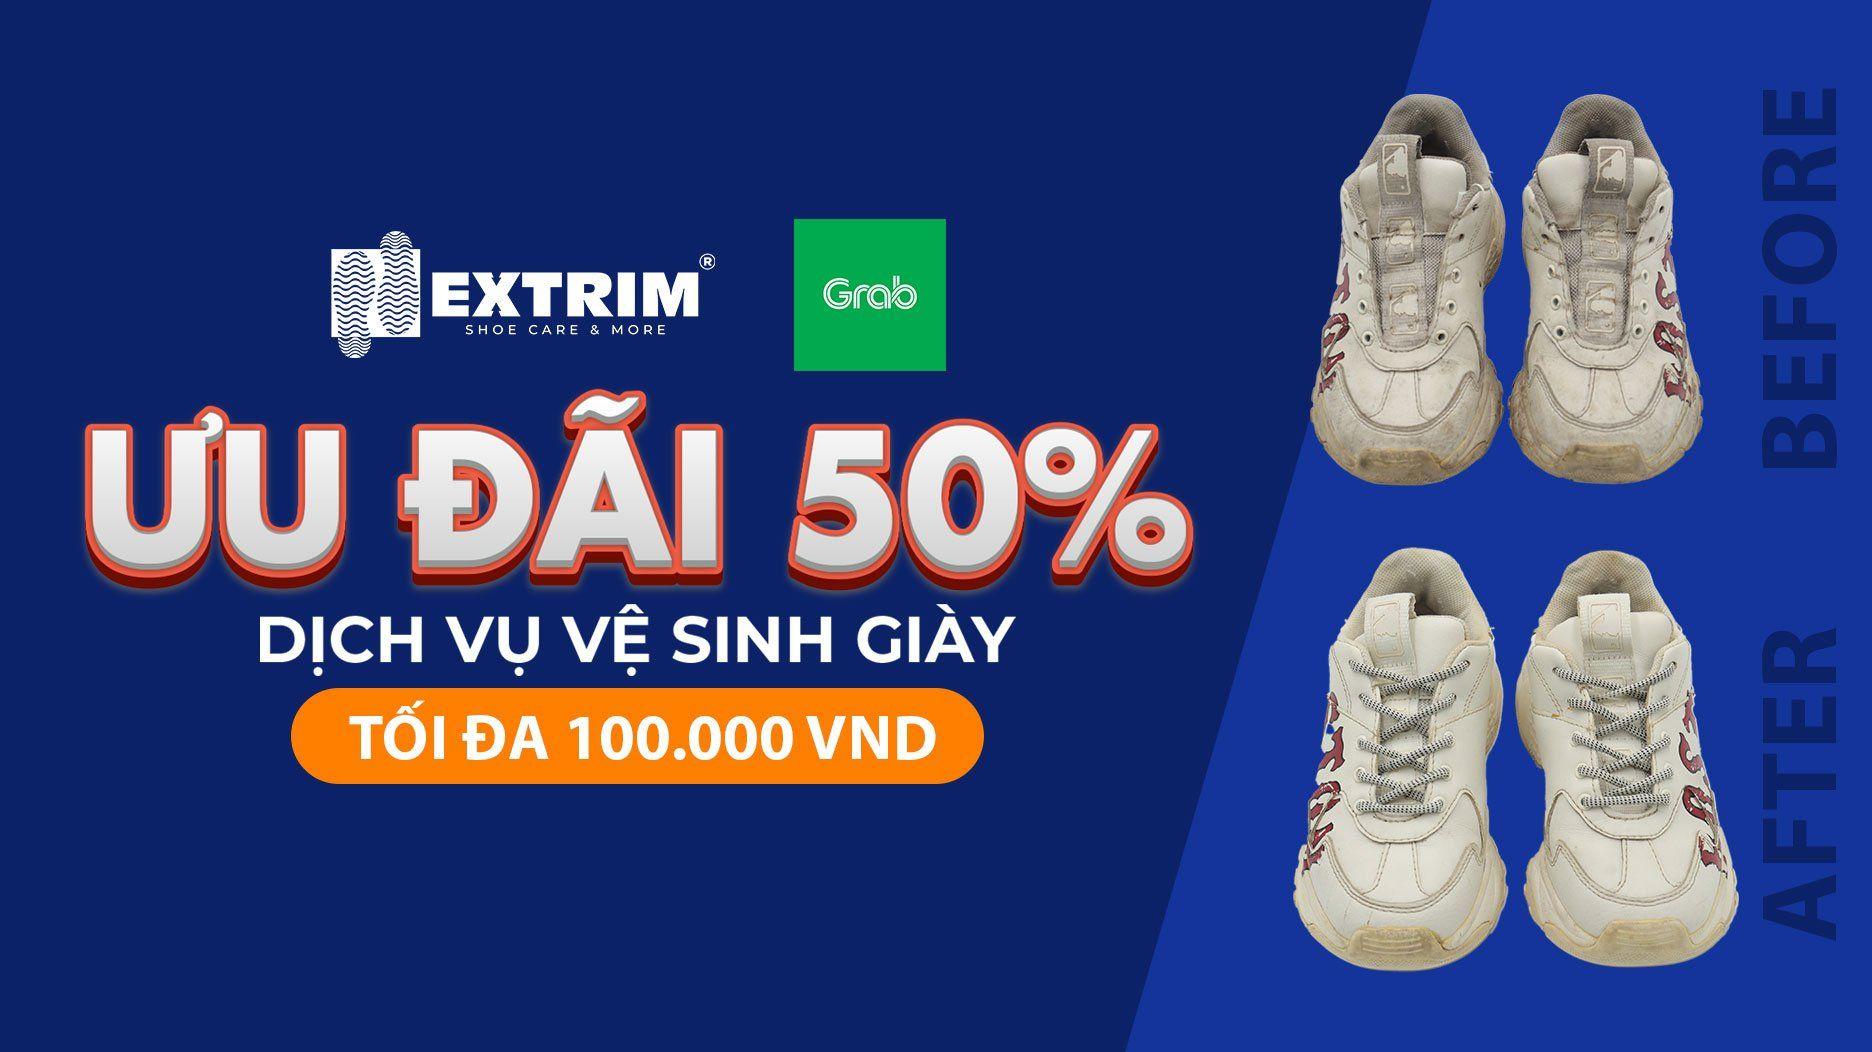 EXTRIM và GRAB hợp tác với ưu đãi 50% dịch vụ Vệ sinh giày trên GrabRewards